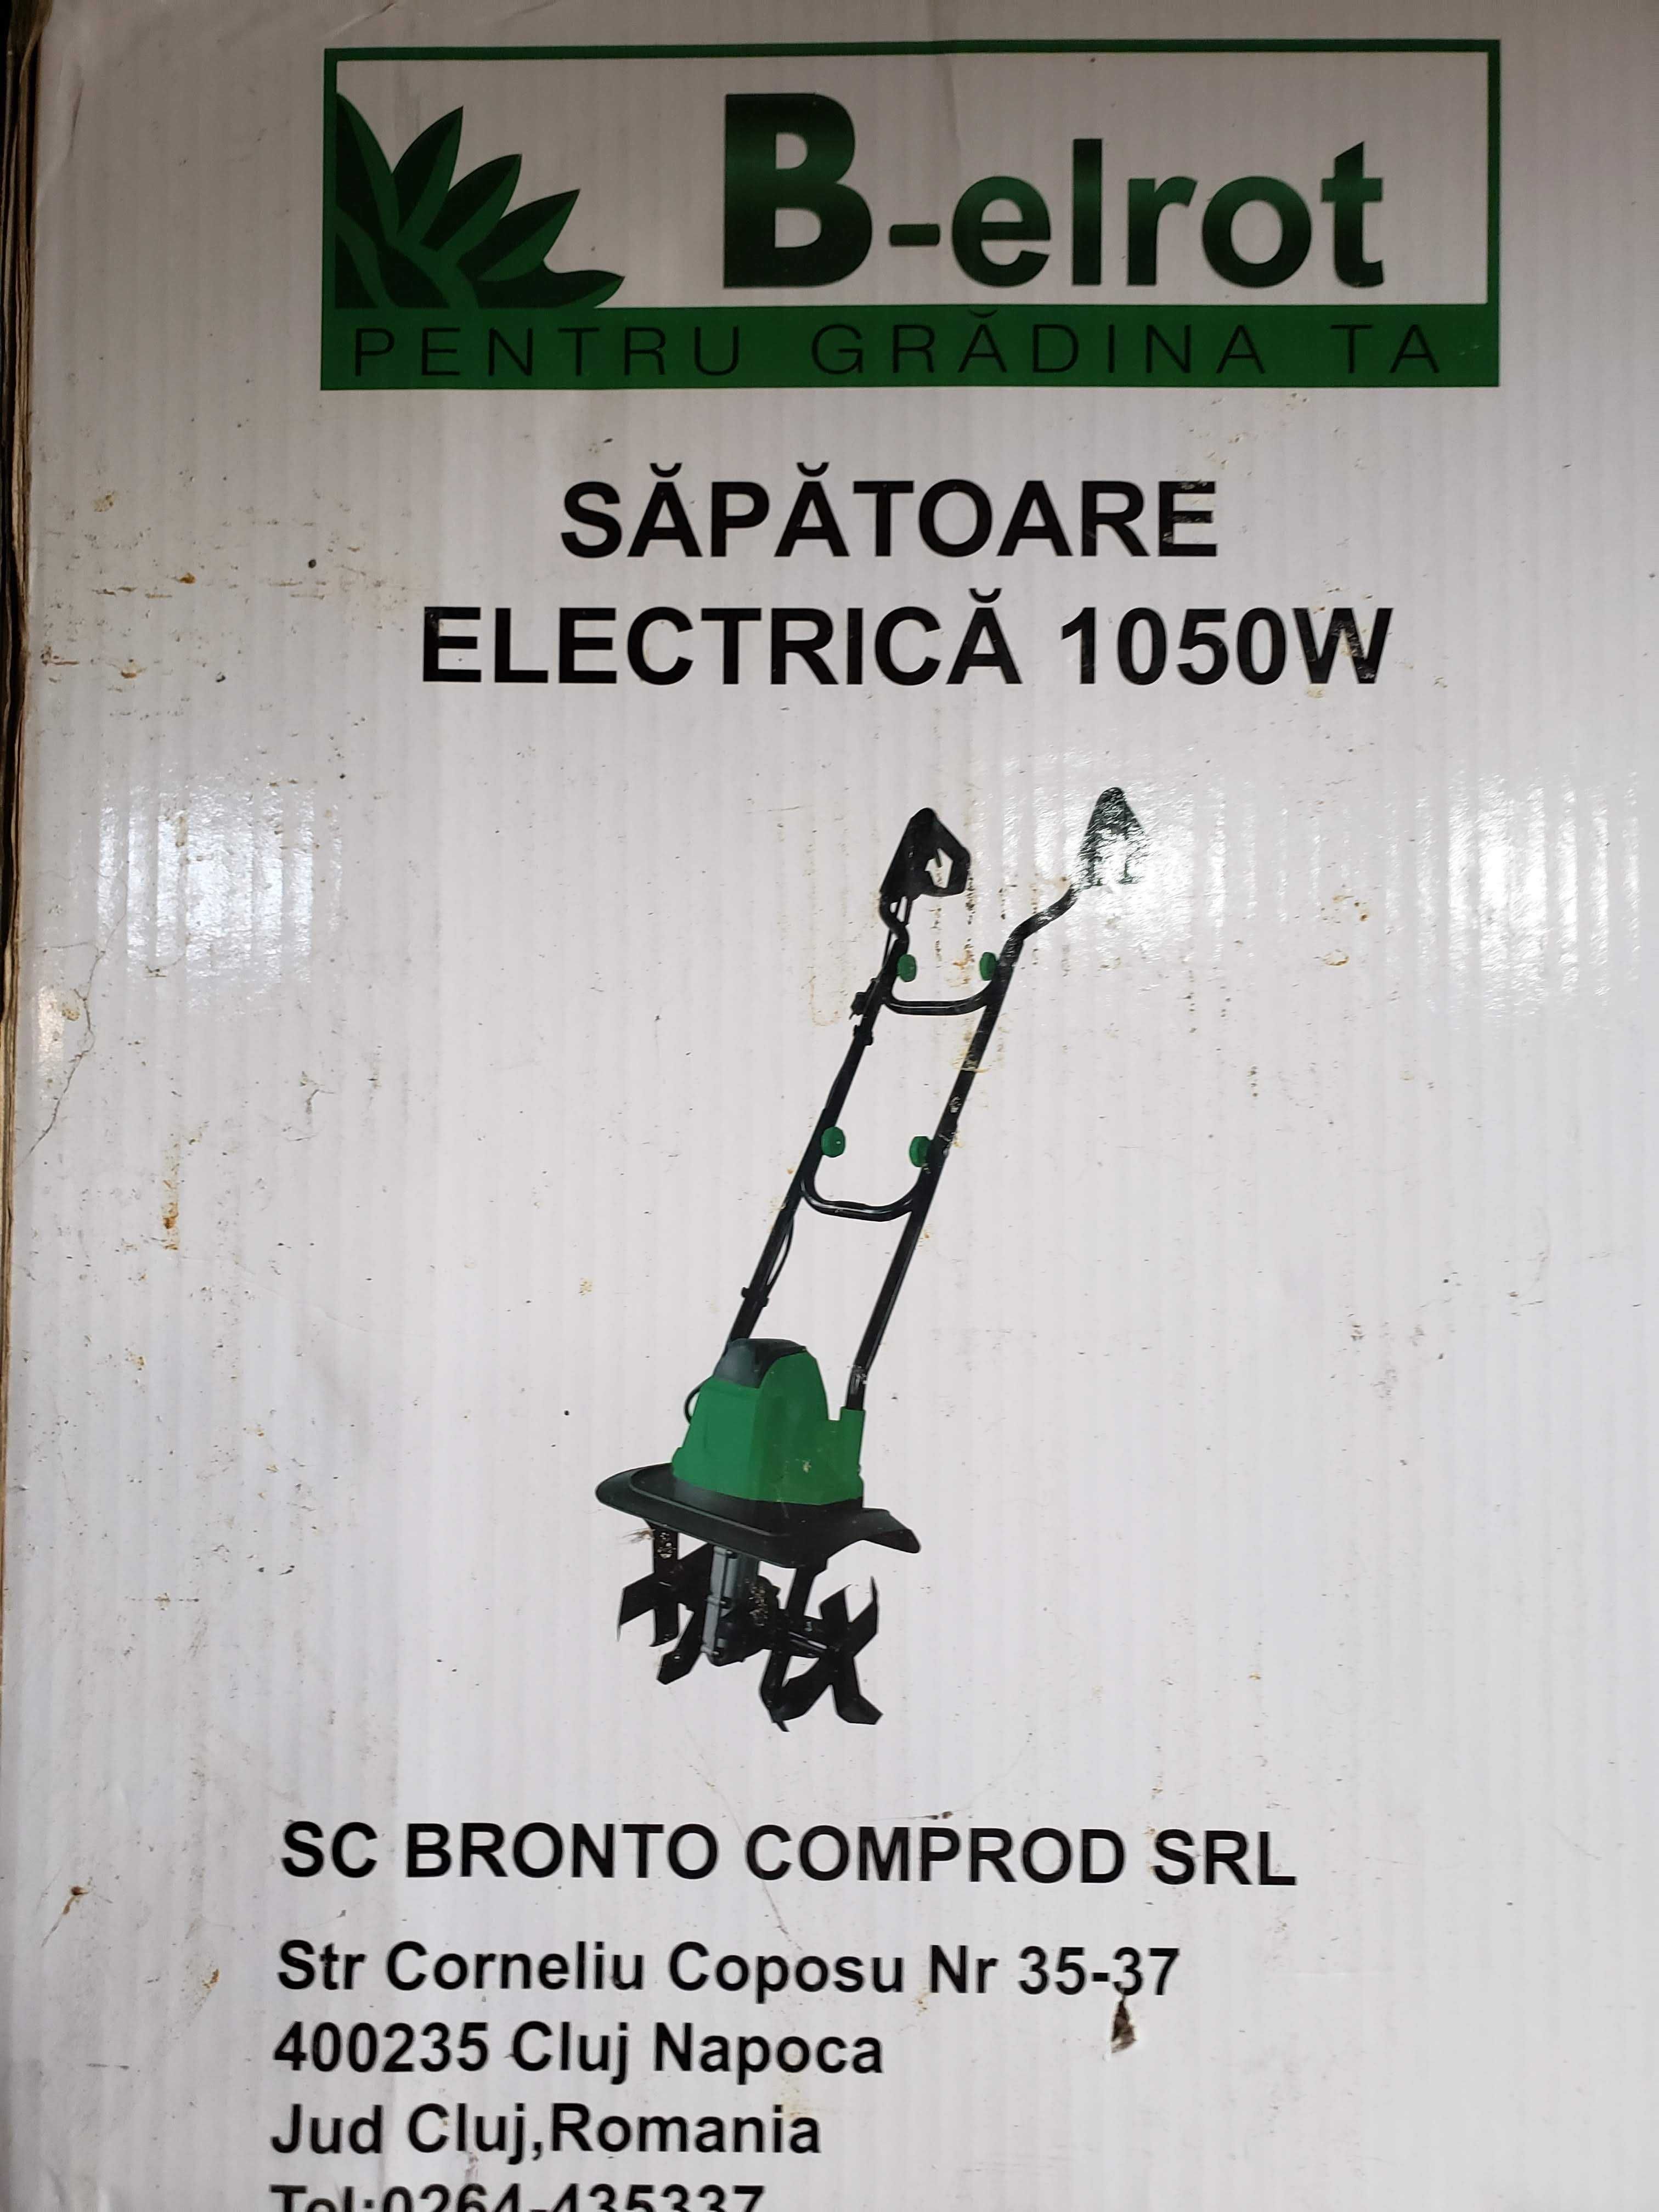 Sapatoare electrica Bronto B-elrot 1050 W